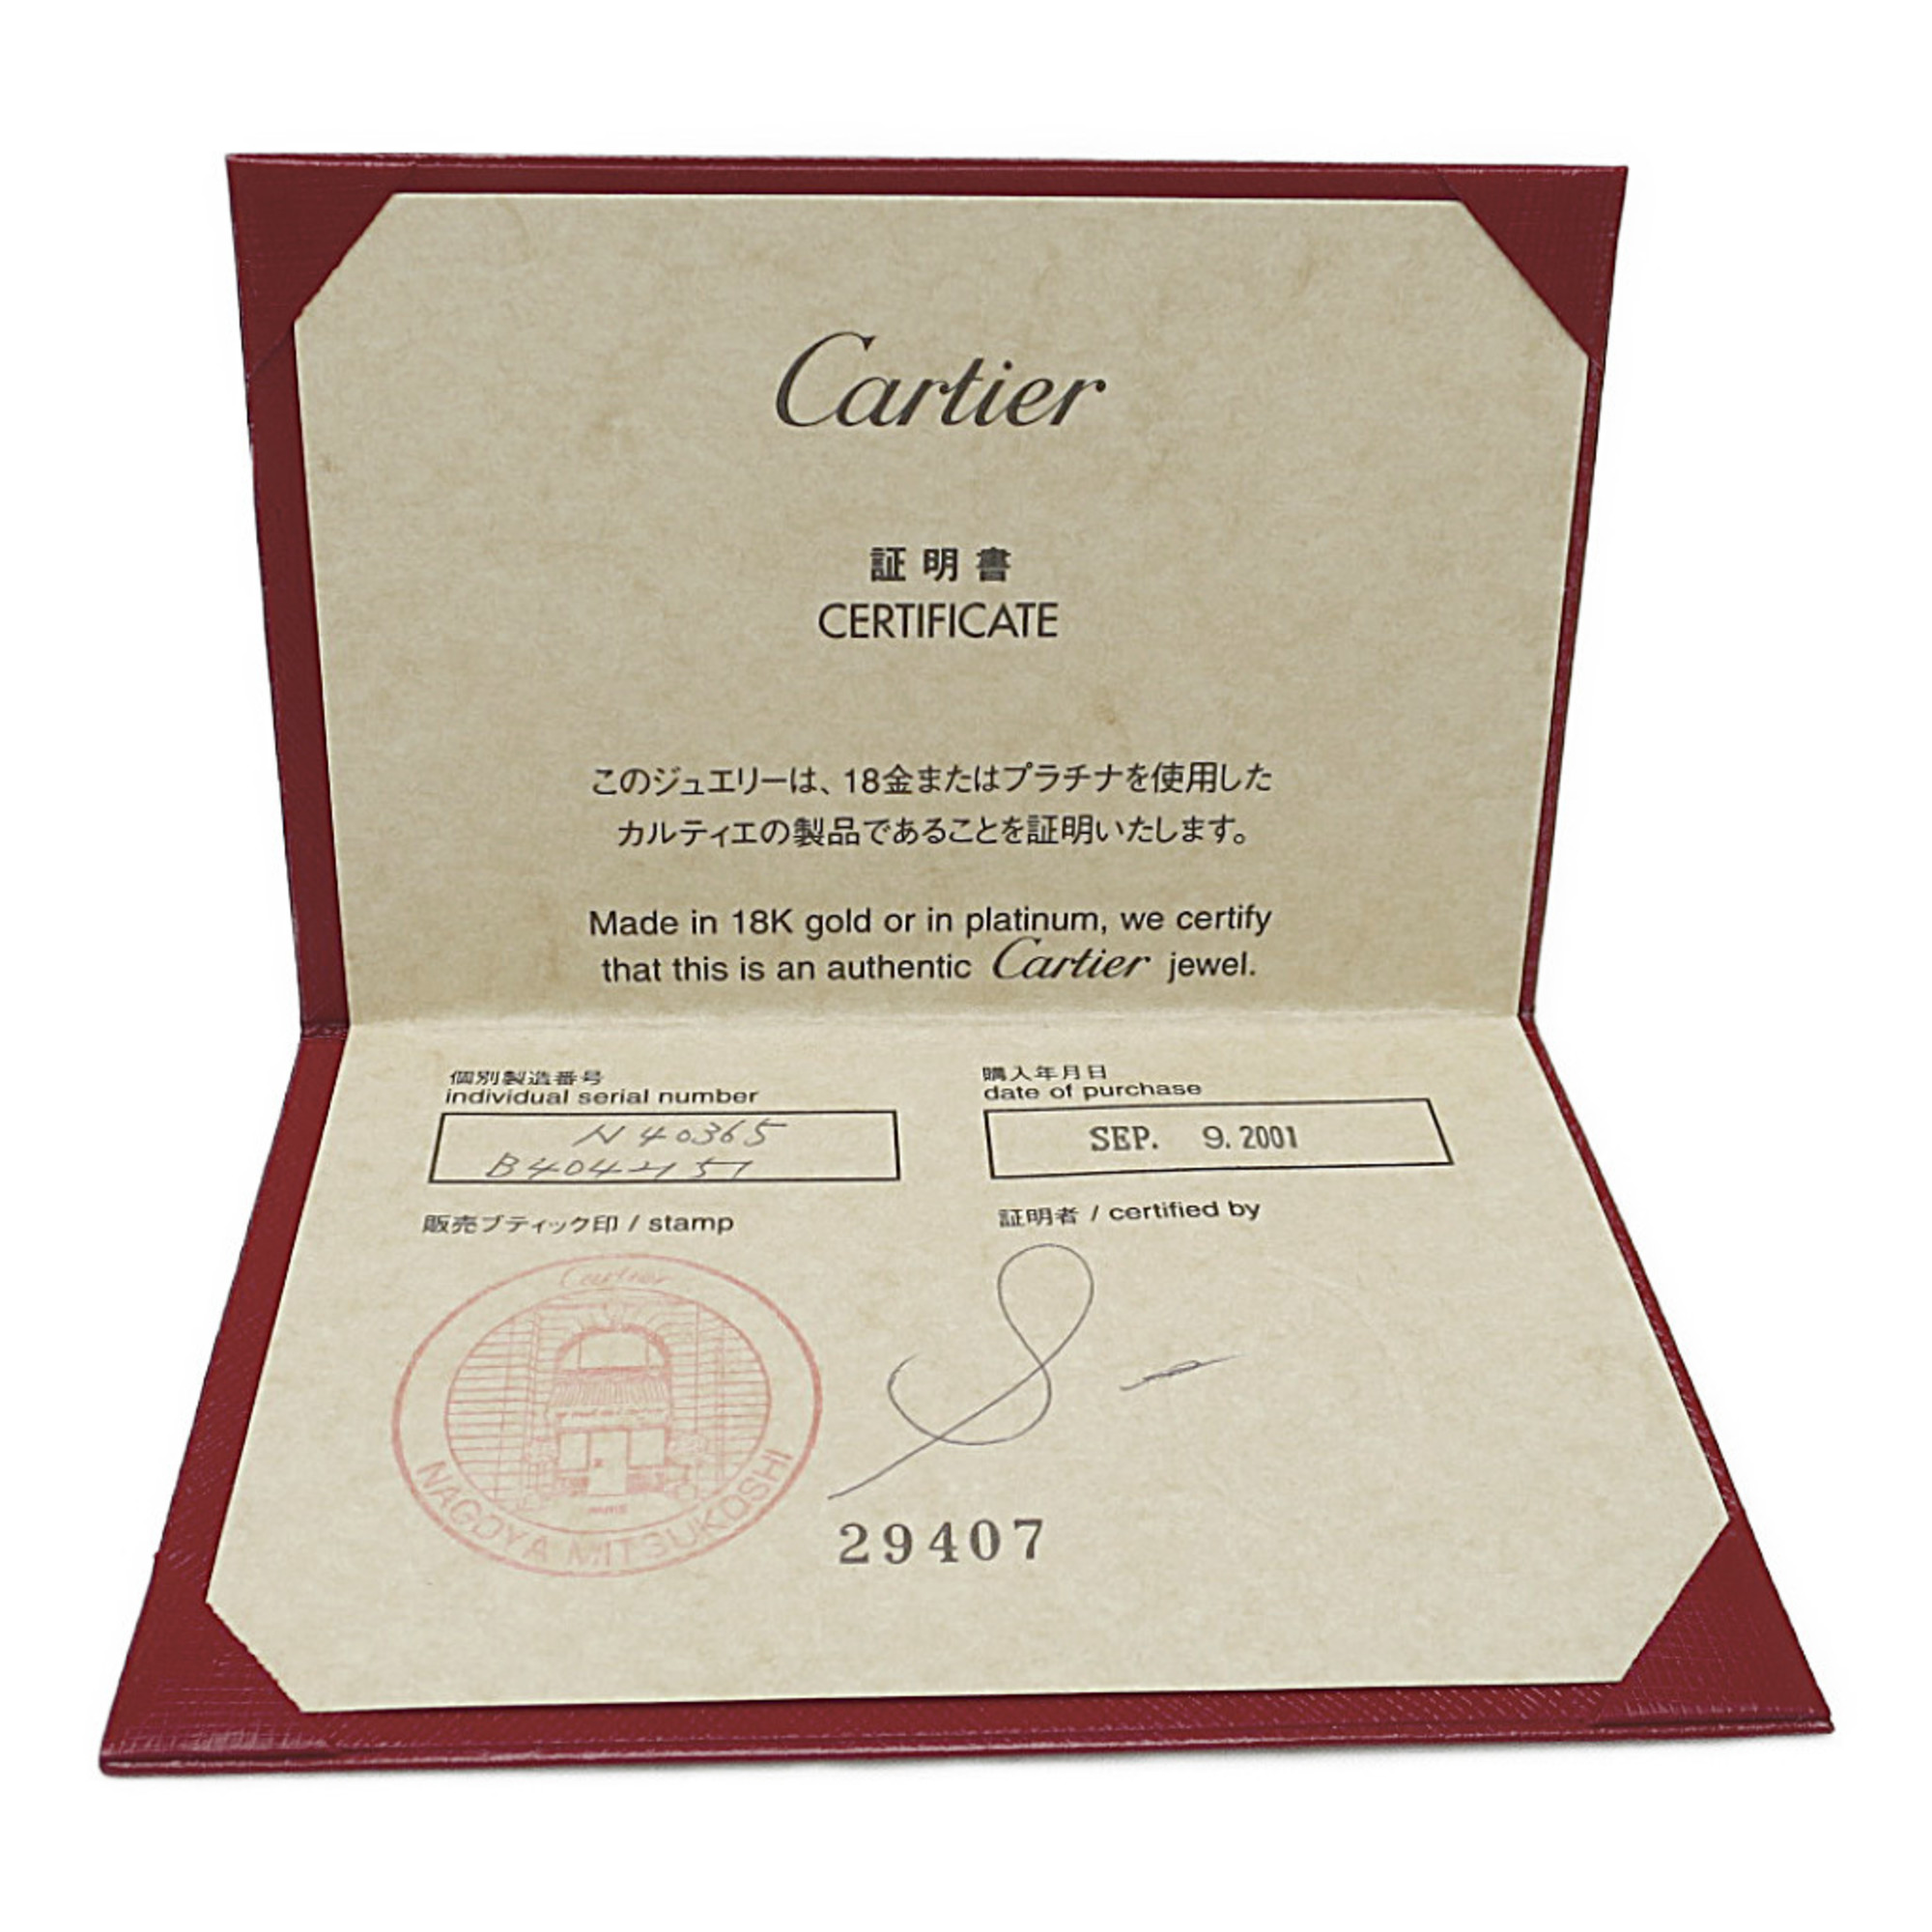 カルティエ(Cartier) タンク リング K18ピンクゴールド(K18PG) ファッション ガーネット バンドリング ピンクゴールド(PG)